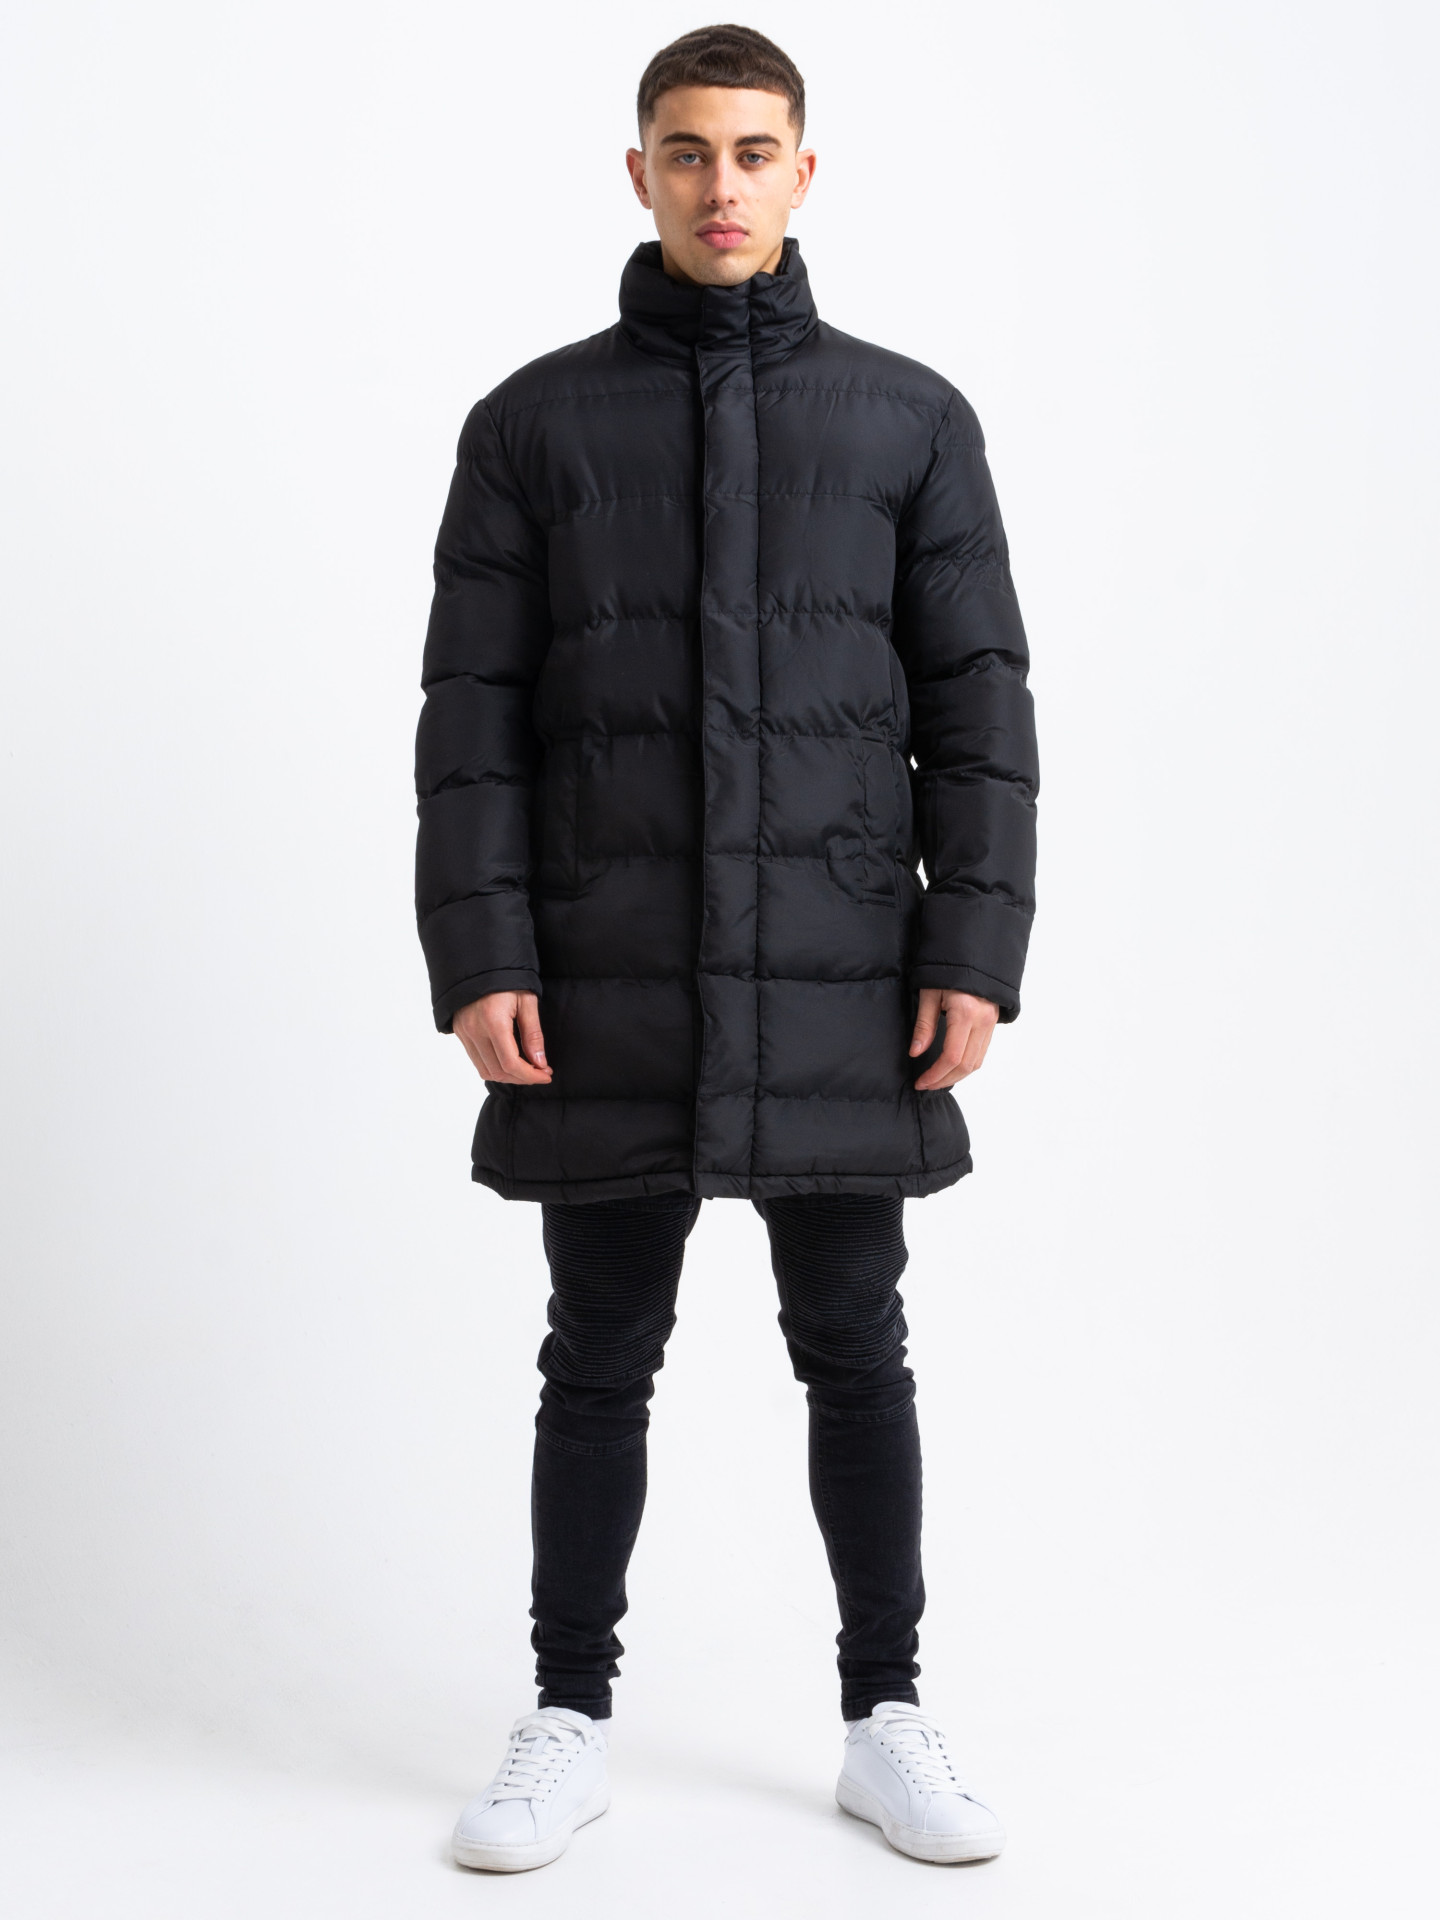 Black padded puffer style jacket longline | Men's Clothing & Fashion ...